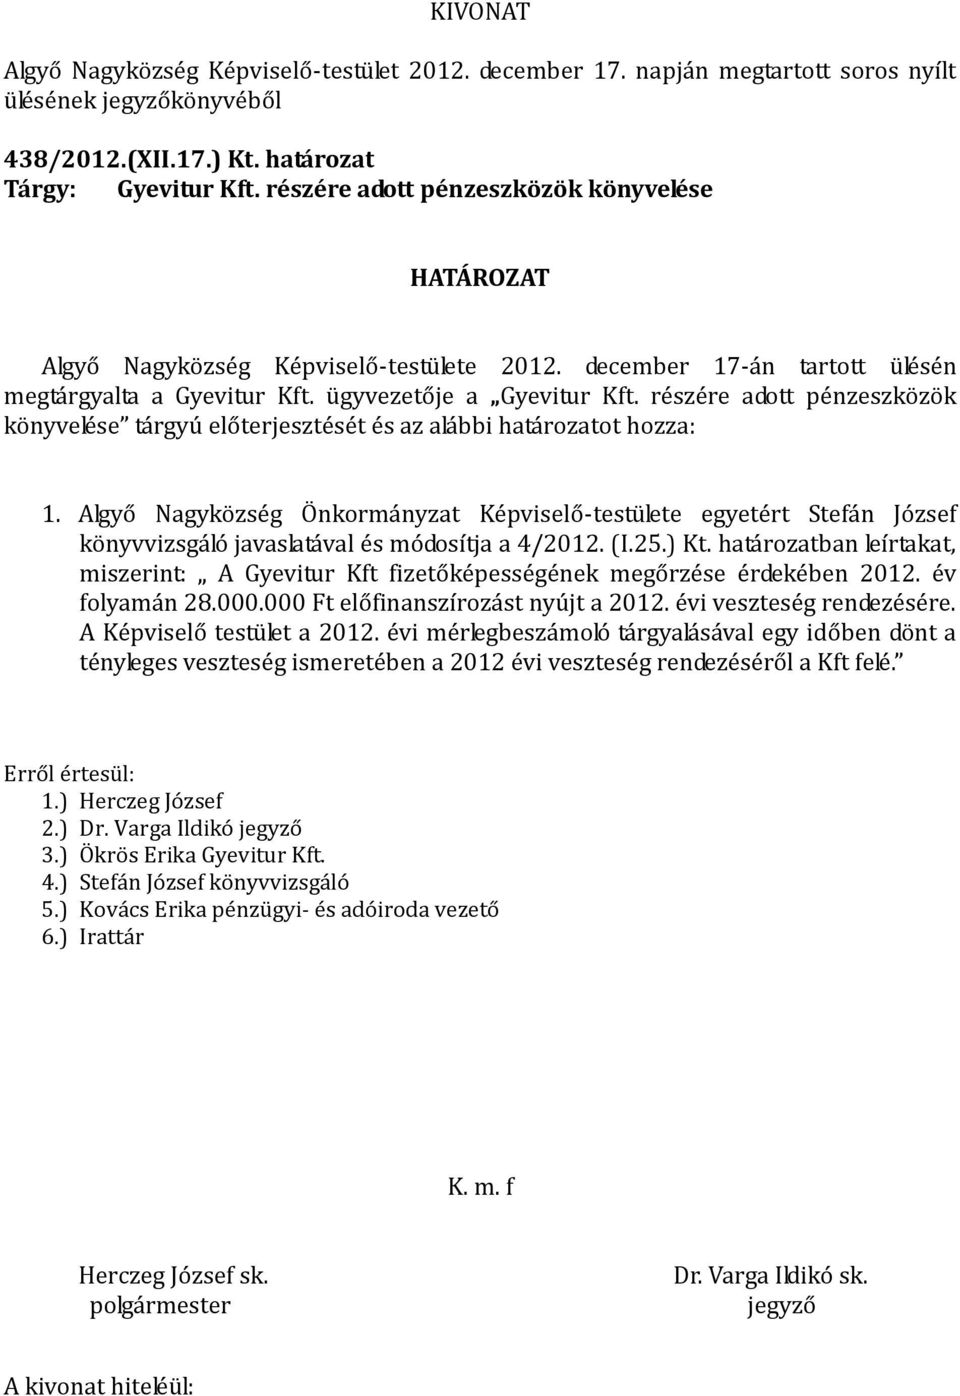 Algyő Nagyközség Önkormányzat Képviselő-testülete egyetért Stefán József könyvvizsgáló javaslatával és módosítja a 4/2012. (I.25.) Kt.